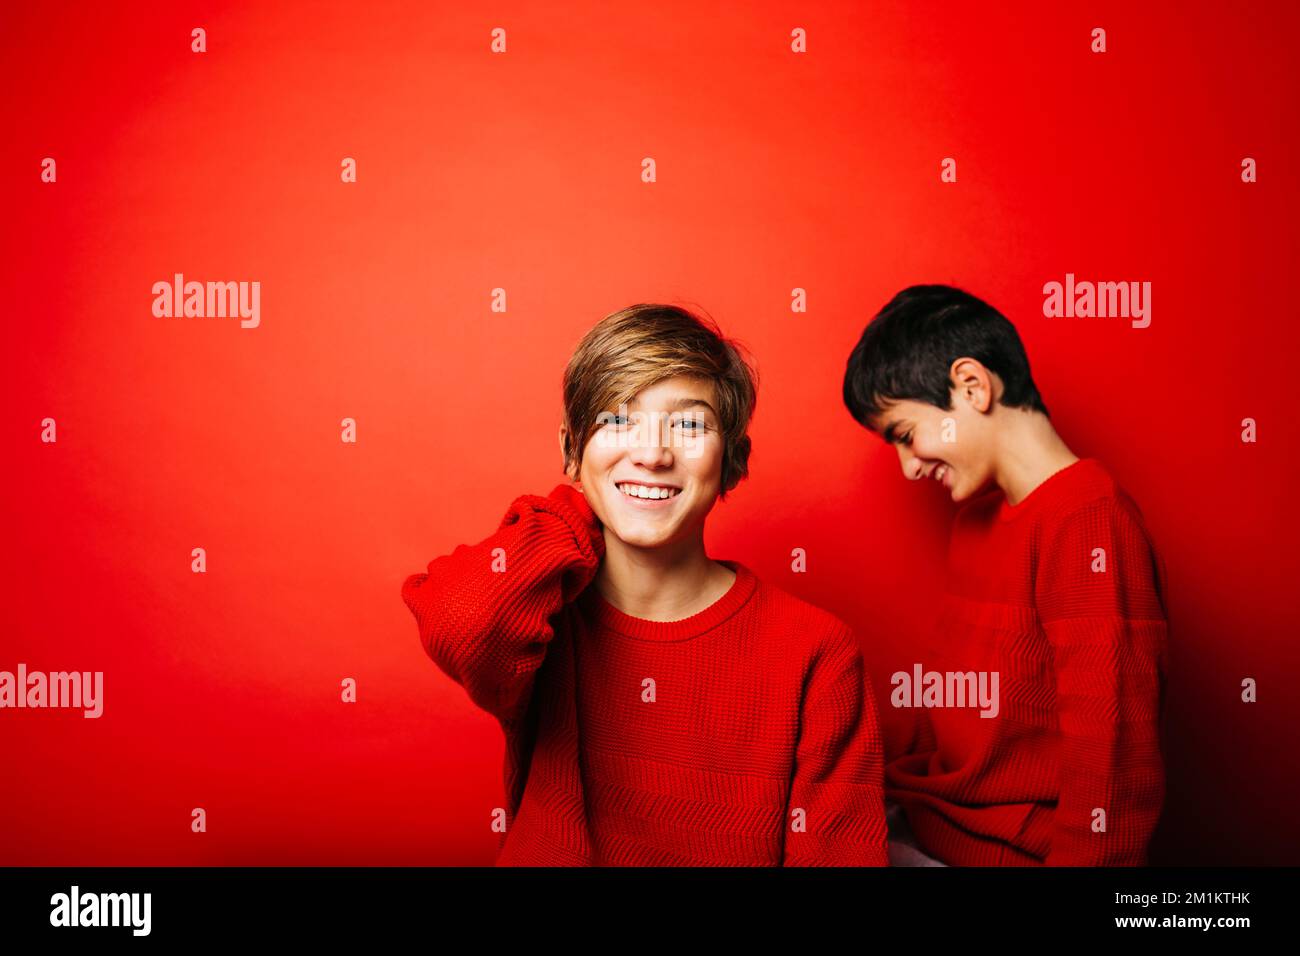 Deux pré-adolescents, portant un chandail rouge, jouant sur un fond rouge Banque D'Images